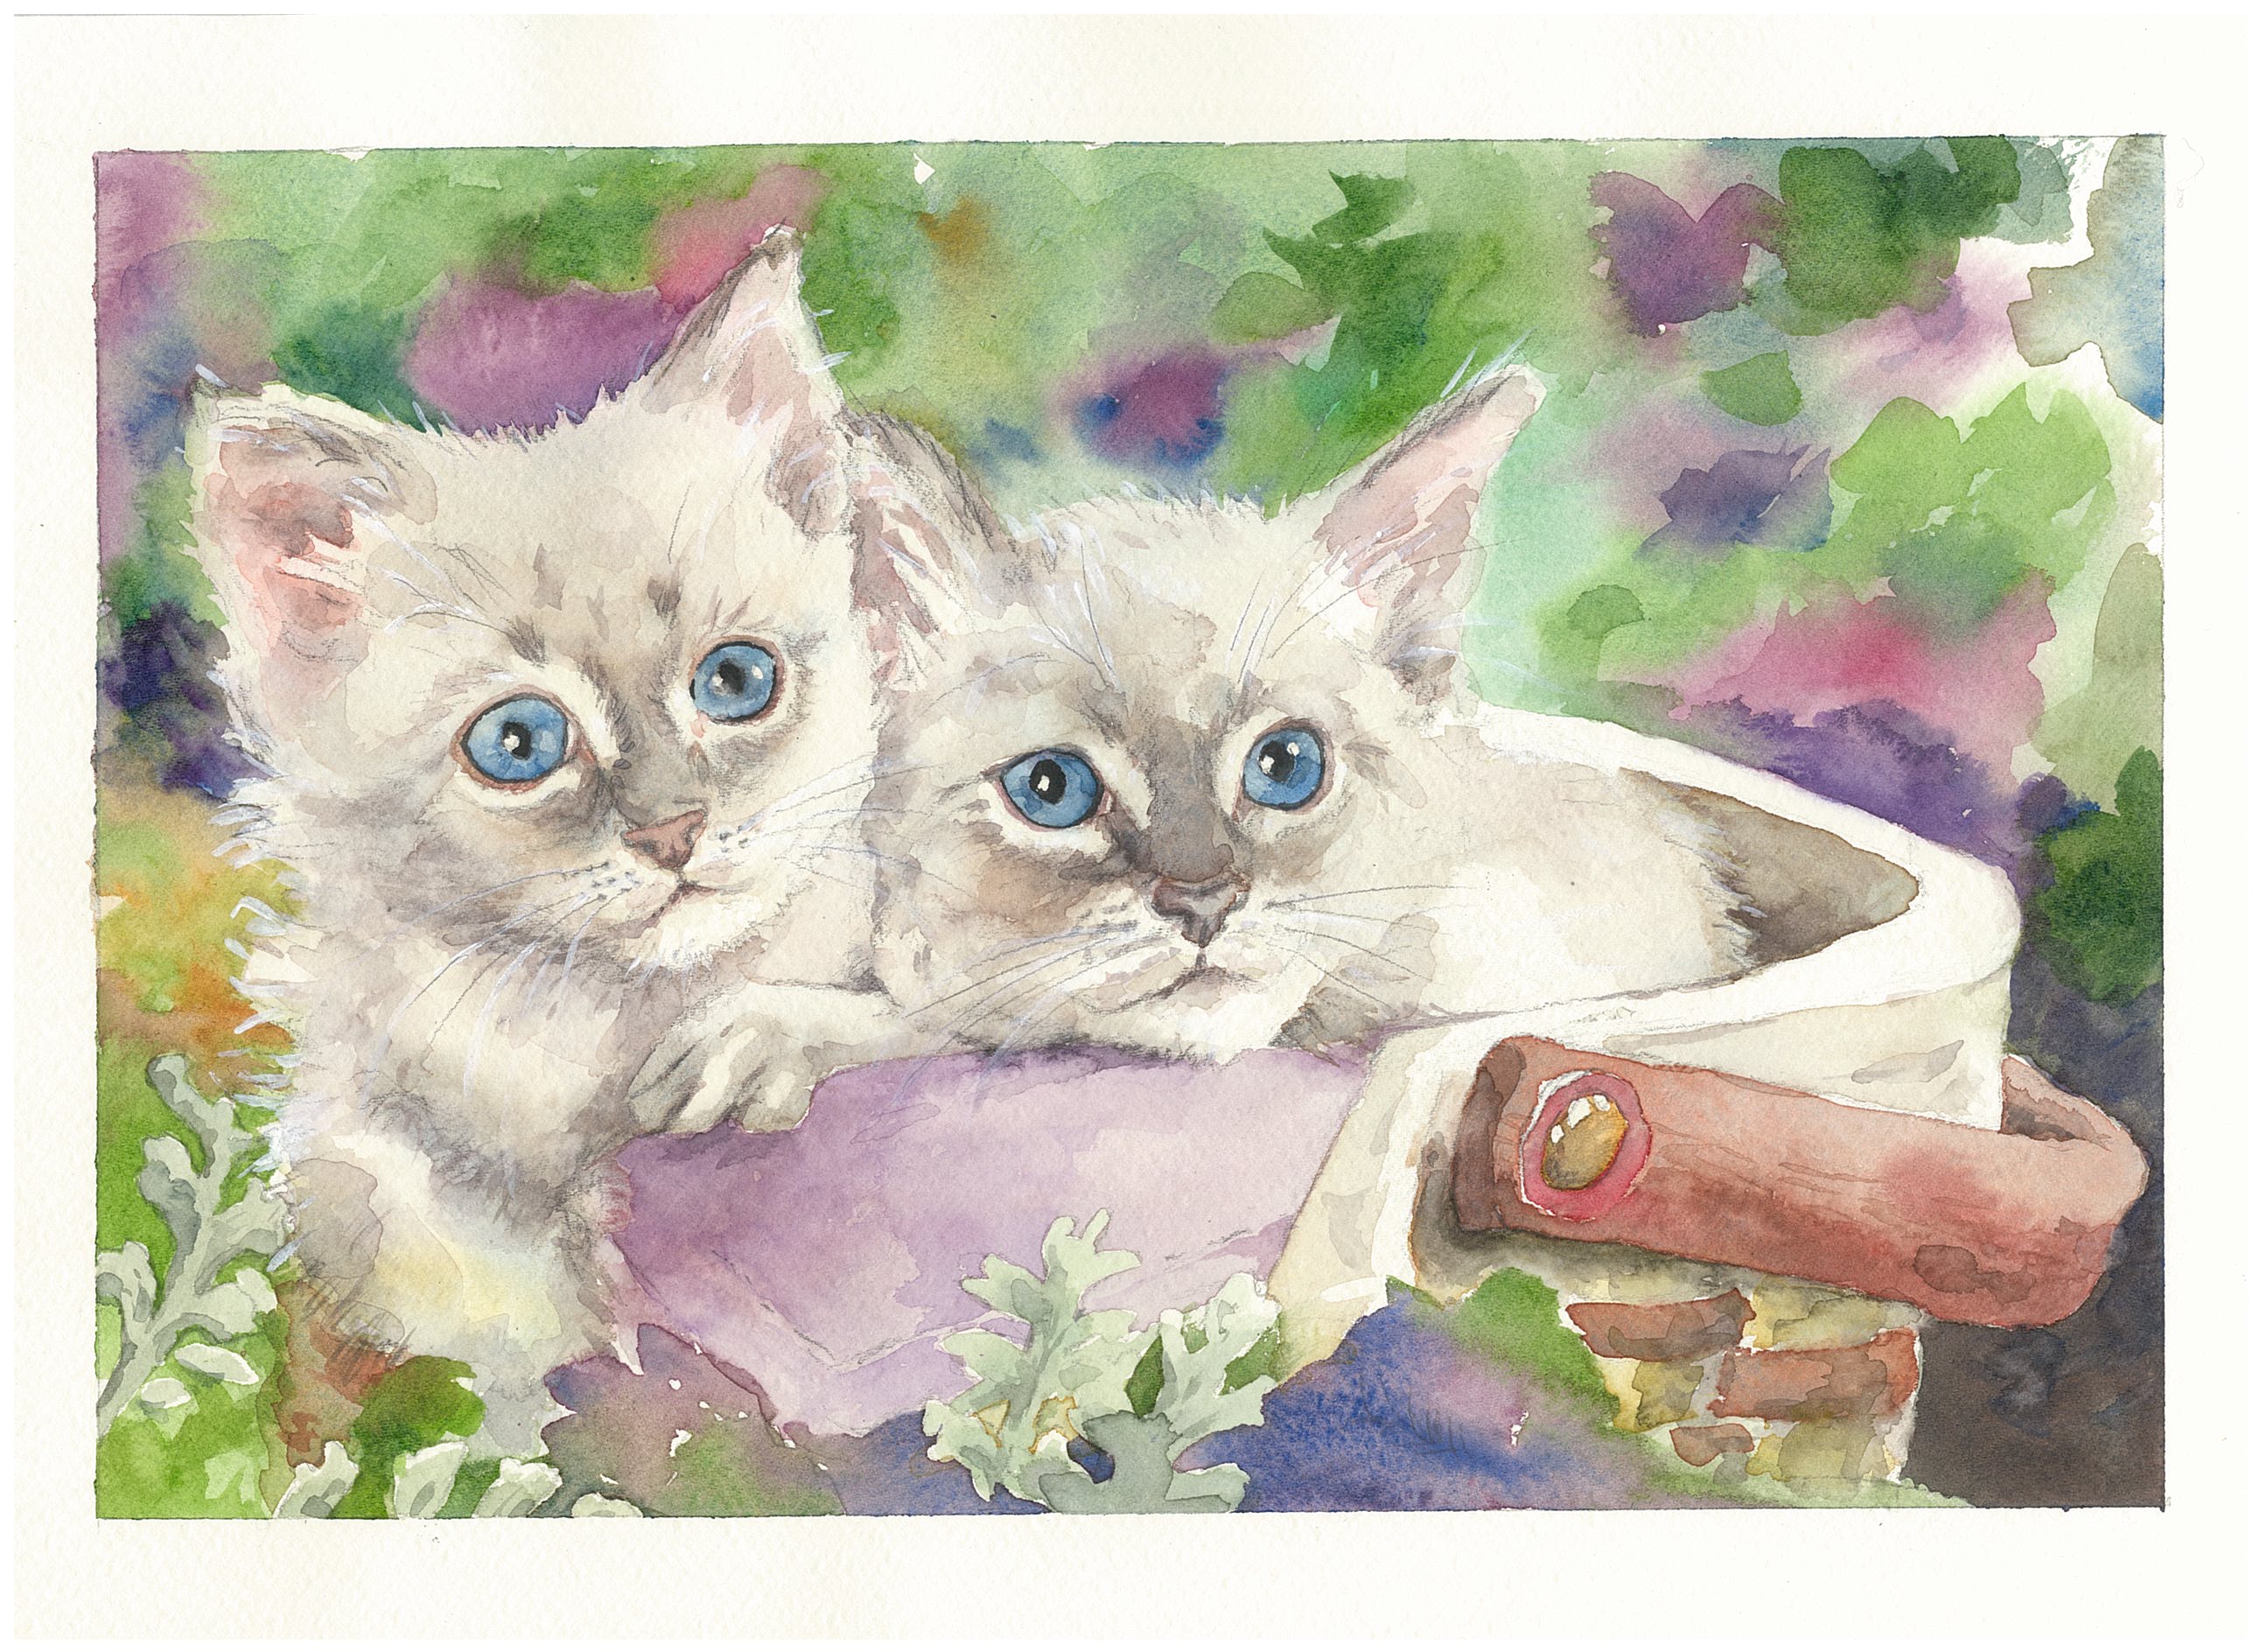 Mostra “Uomini e gatti”, acquerelli di Angela Macario alla Biblioteca civica di Alba